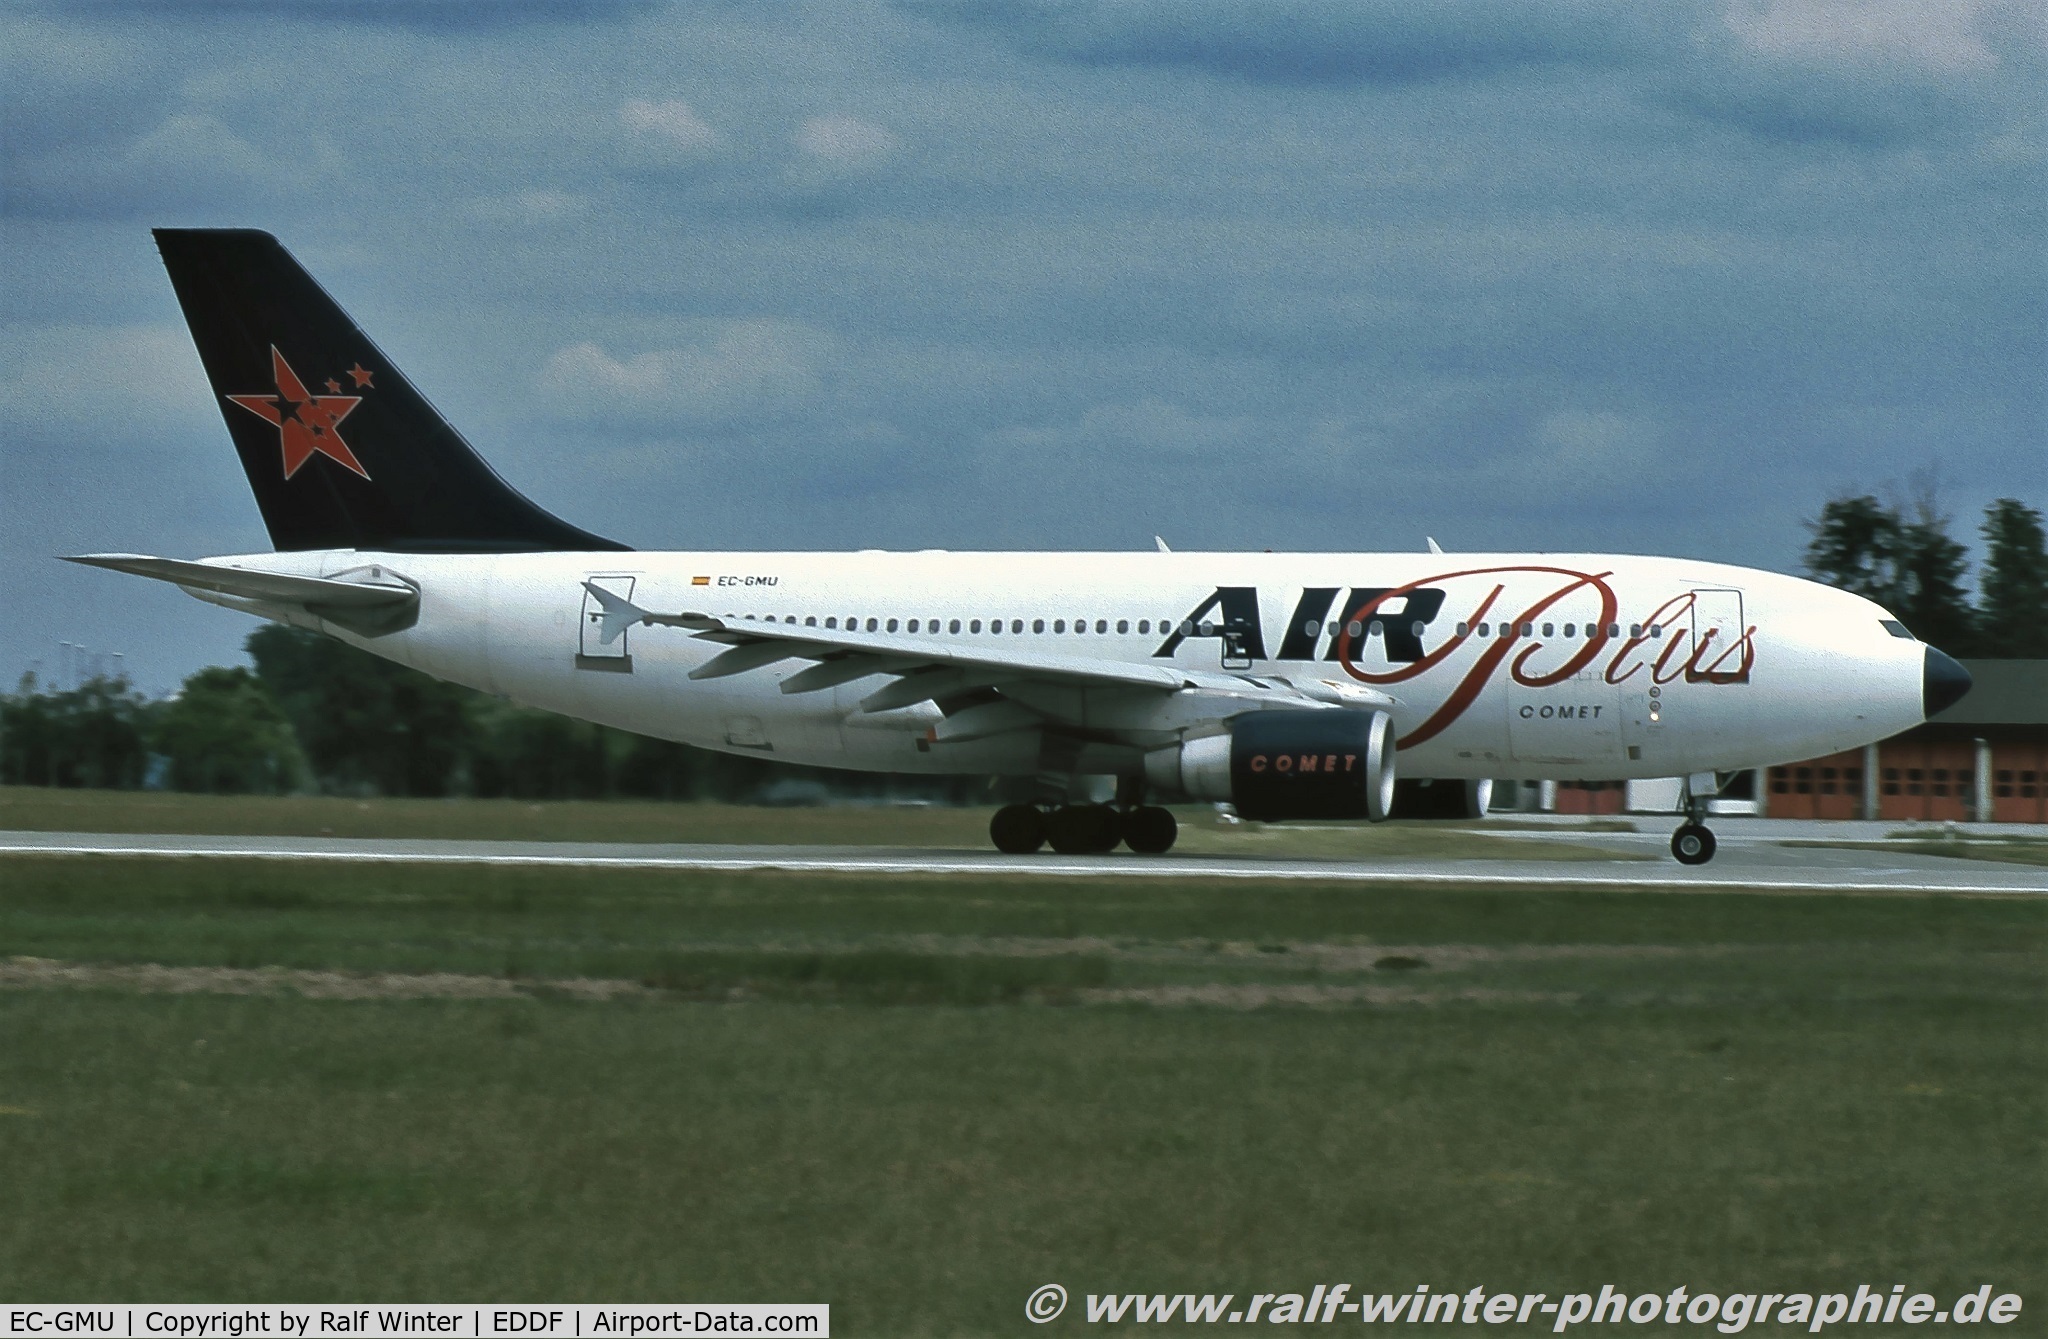 EC-GMU, 1988 Airbus A310-324 C/N 451, Airbus A310-324 - 2Z MPD Air Plus Comet - 451 - EC-GMU - 25.05.1998 - FRA